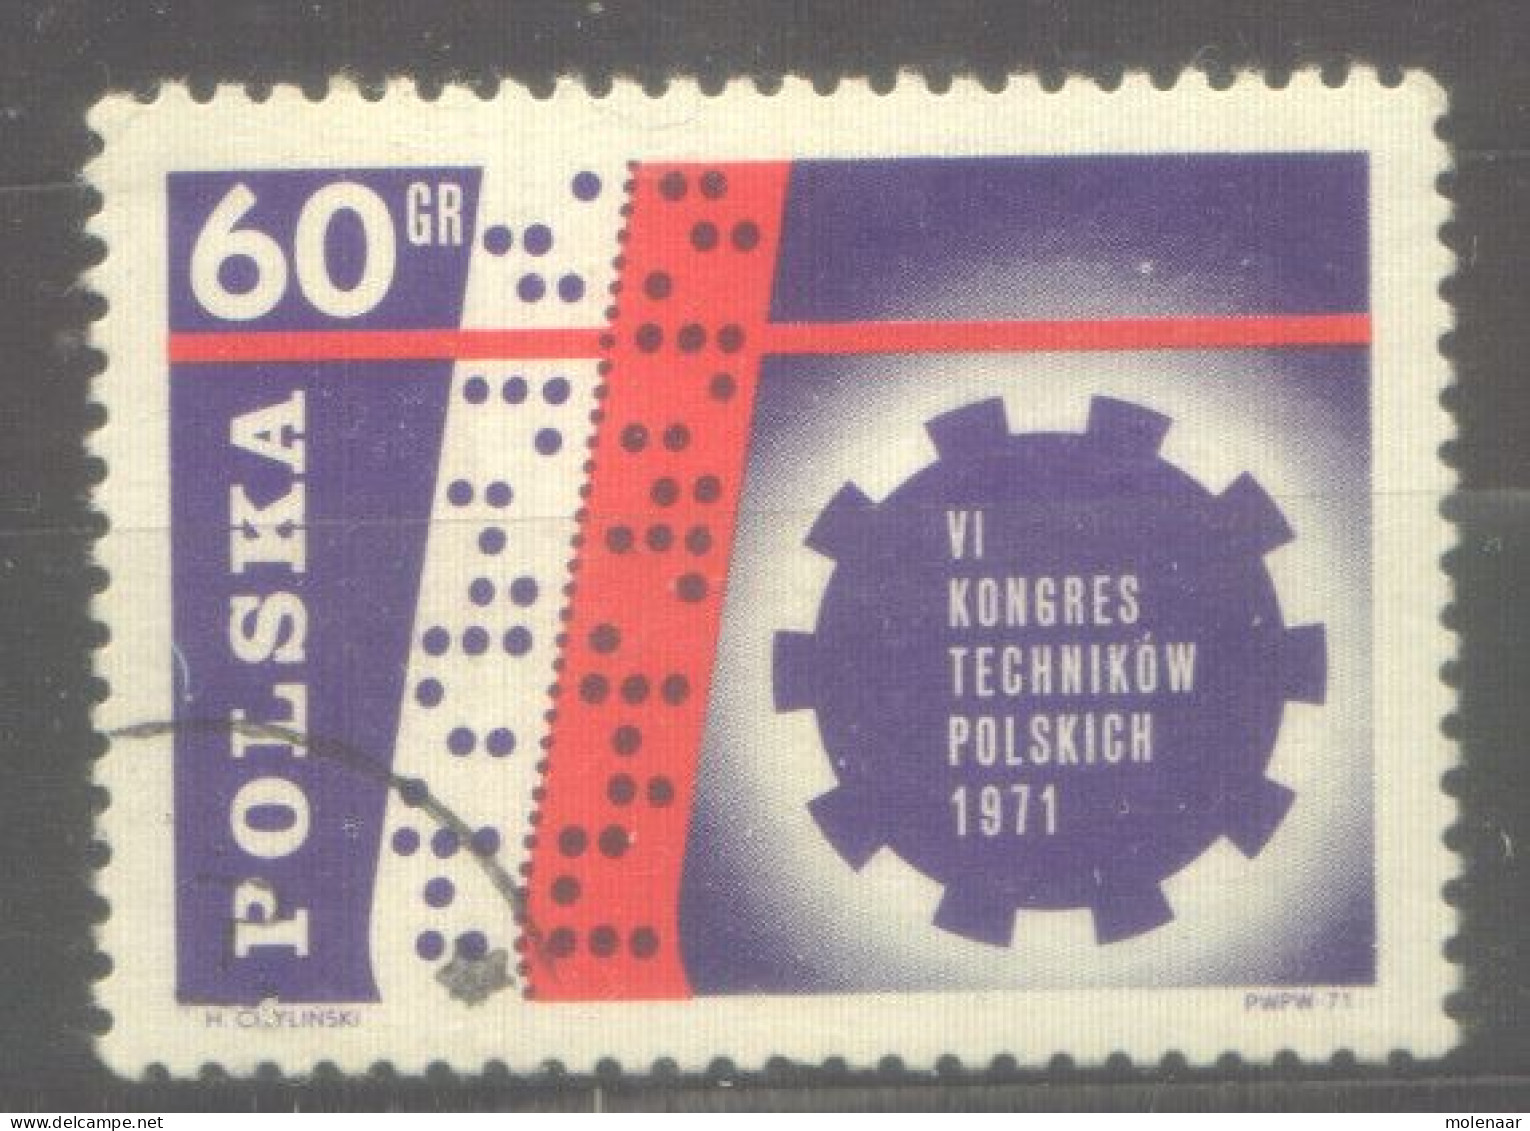 Postzegels > Europa > Polen > 1944-.... Republiek > 1971-80 > Gebruikt 2097 (12057) - Used Stamps